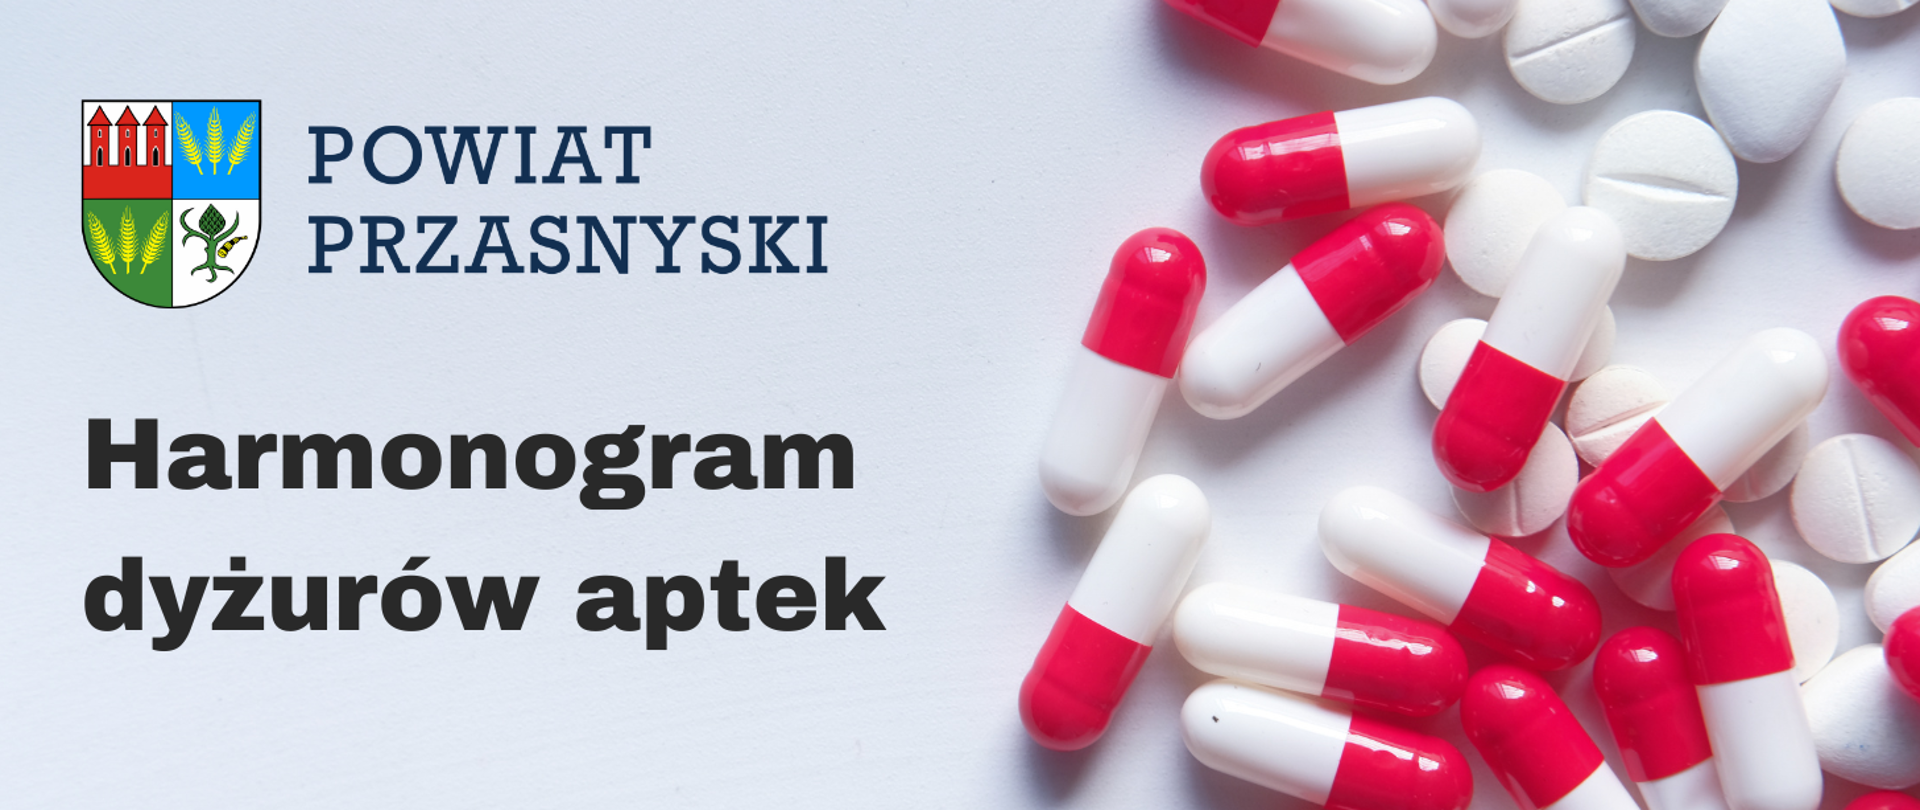 Na grafice herb Powiatu Przasnyskiego, napis "Harmonogram dyżurów aptek", w tle biało czerwone tabletki.